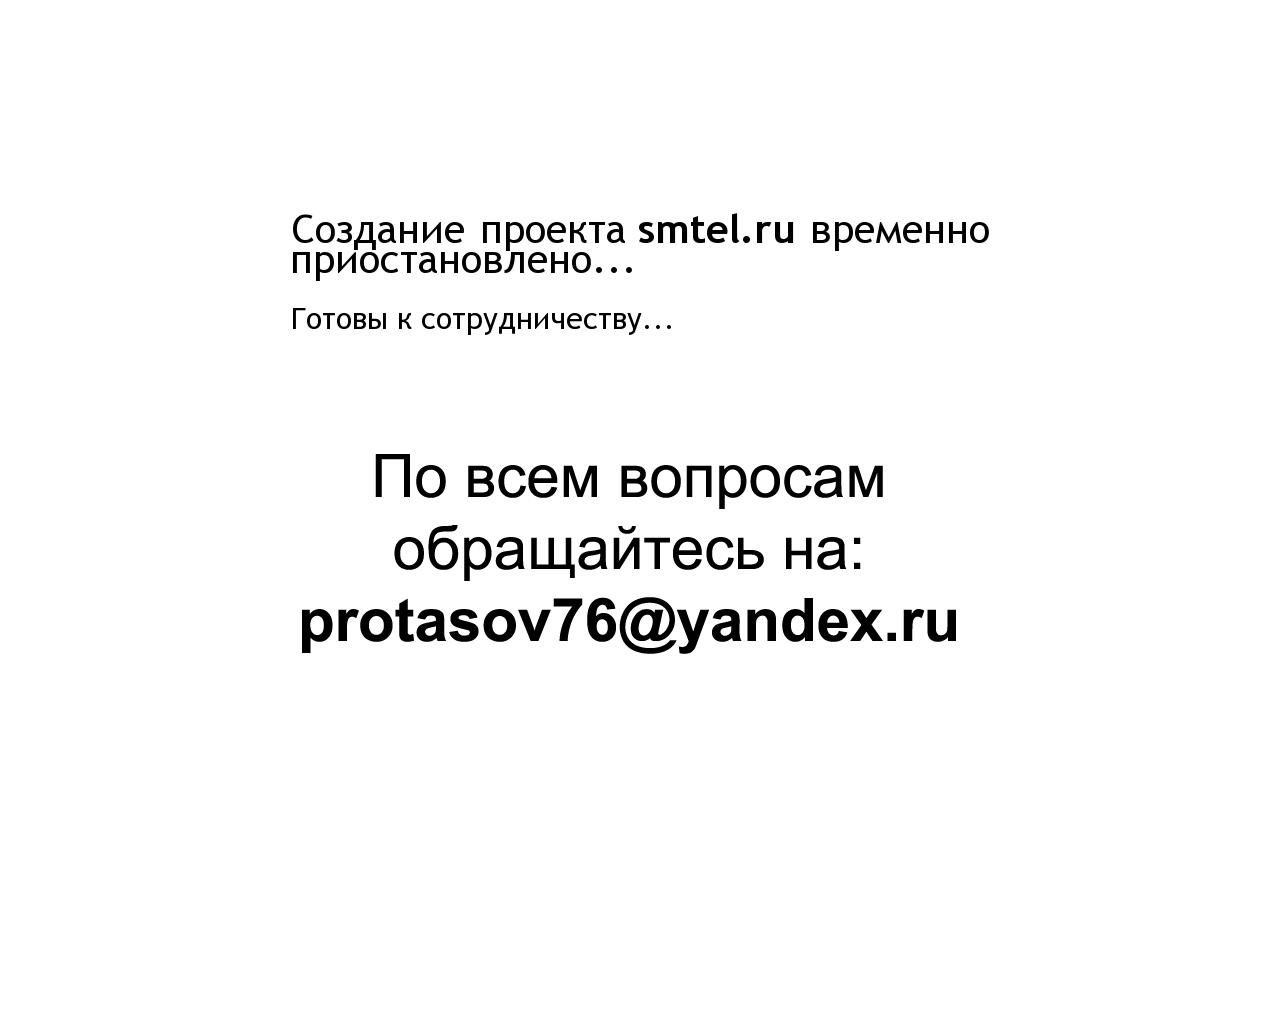 Изображение сайта smtel.ru в разрешении 1280x1024